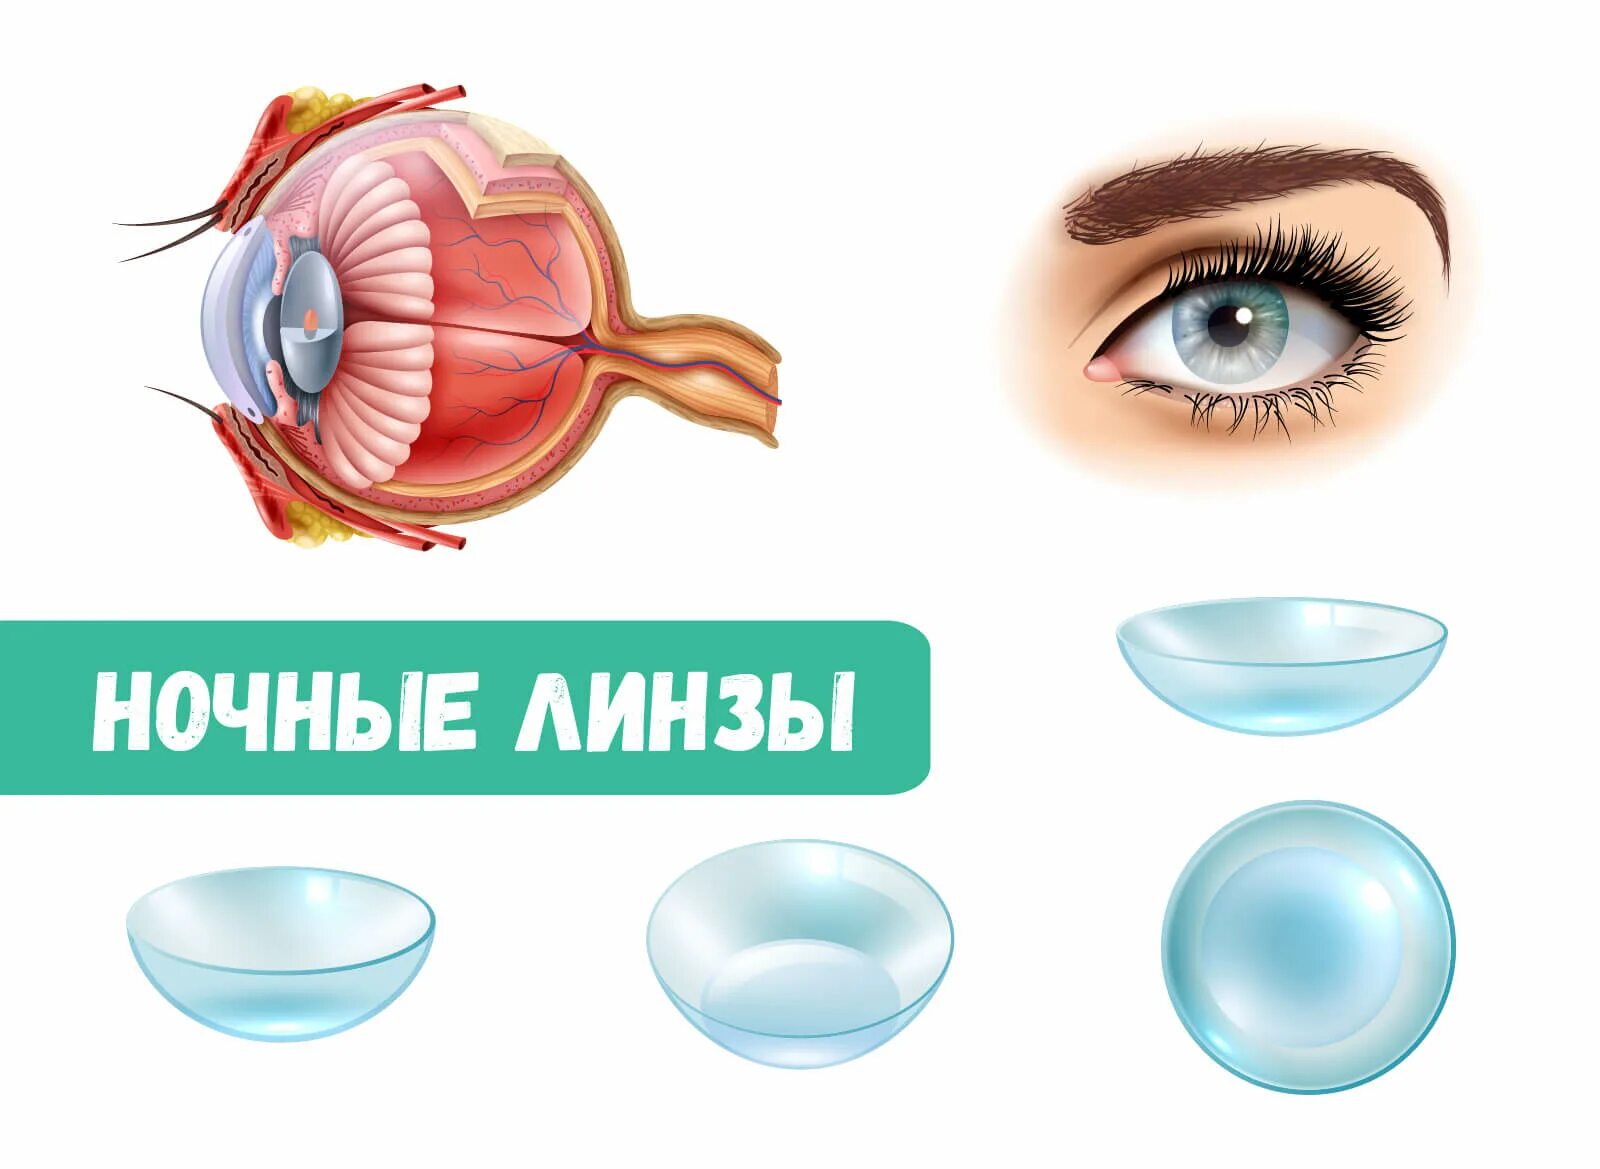 Купить ночные линзы для восстановления зрения цена. Ортокератология ночные линзы. Жесткие ночные линзы для коррекции зрения. Исправление зрения линзами. Линзы корректирующие зрение.